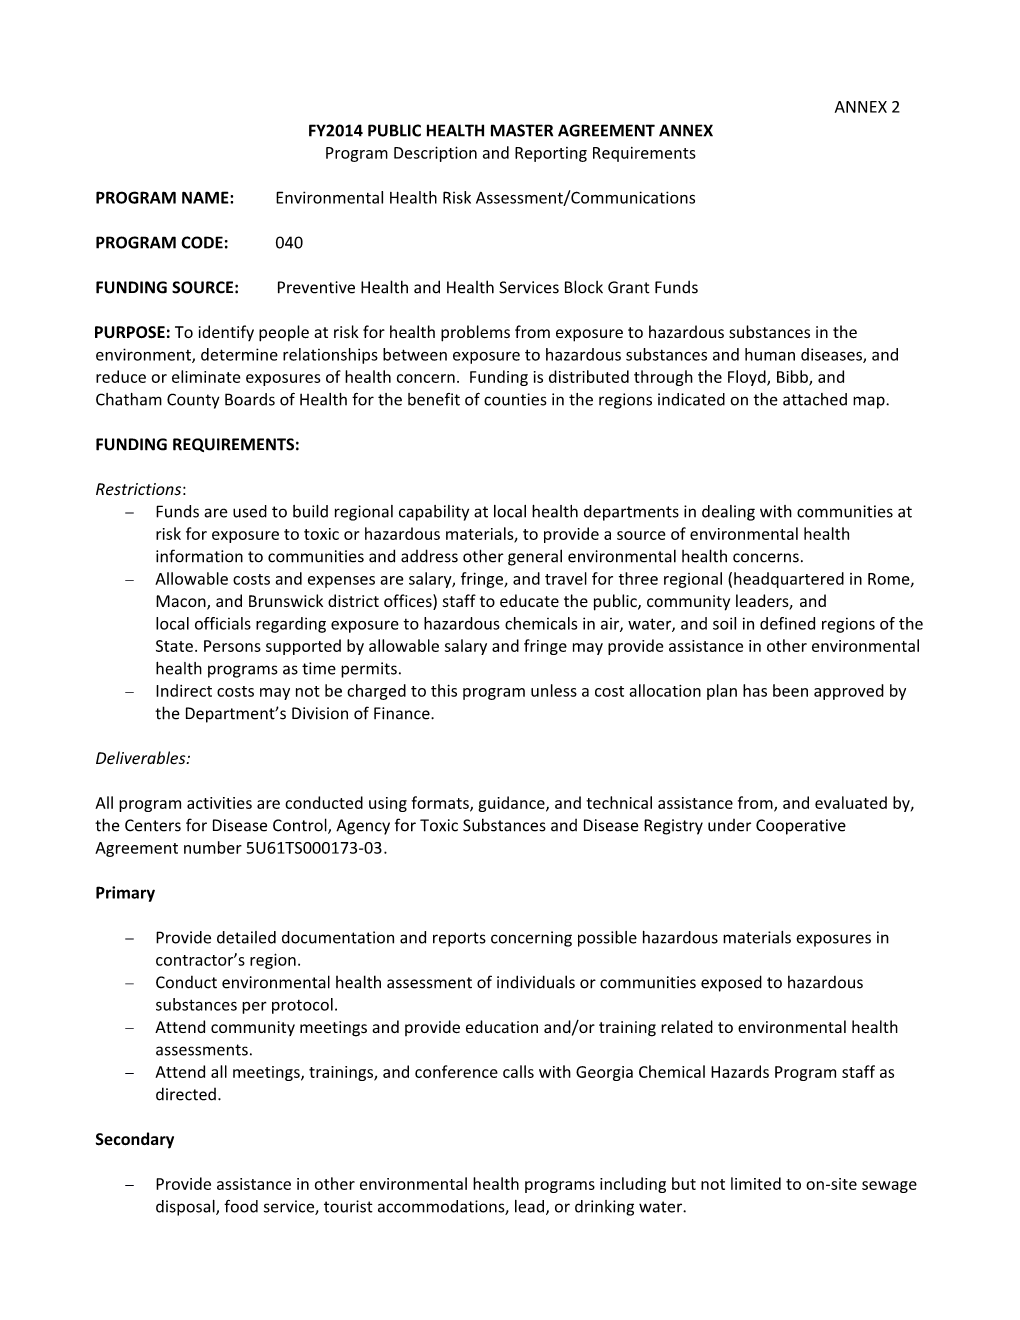 Fy2014 Public Health Master Agreement Annex